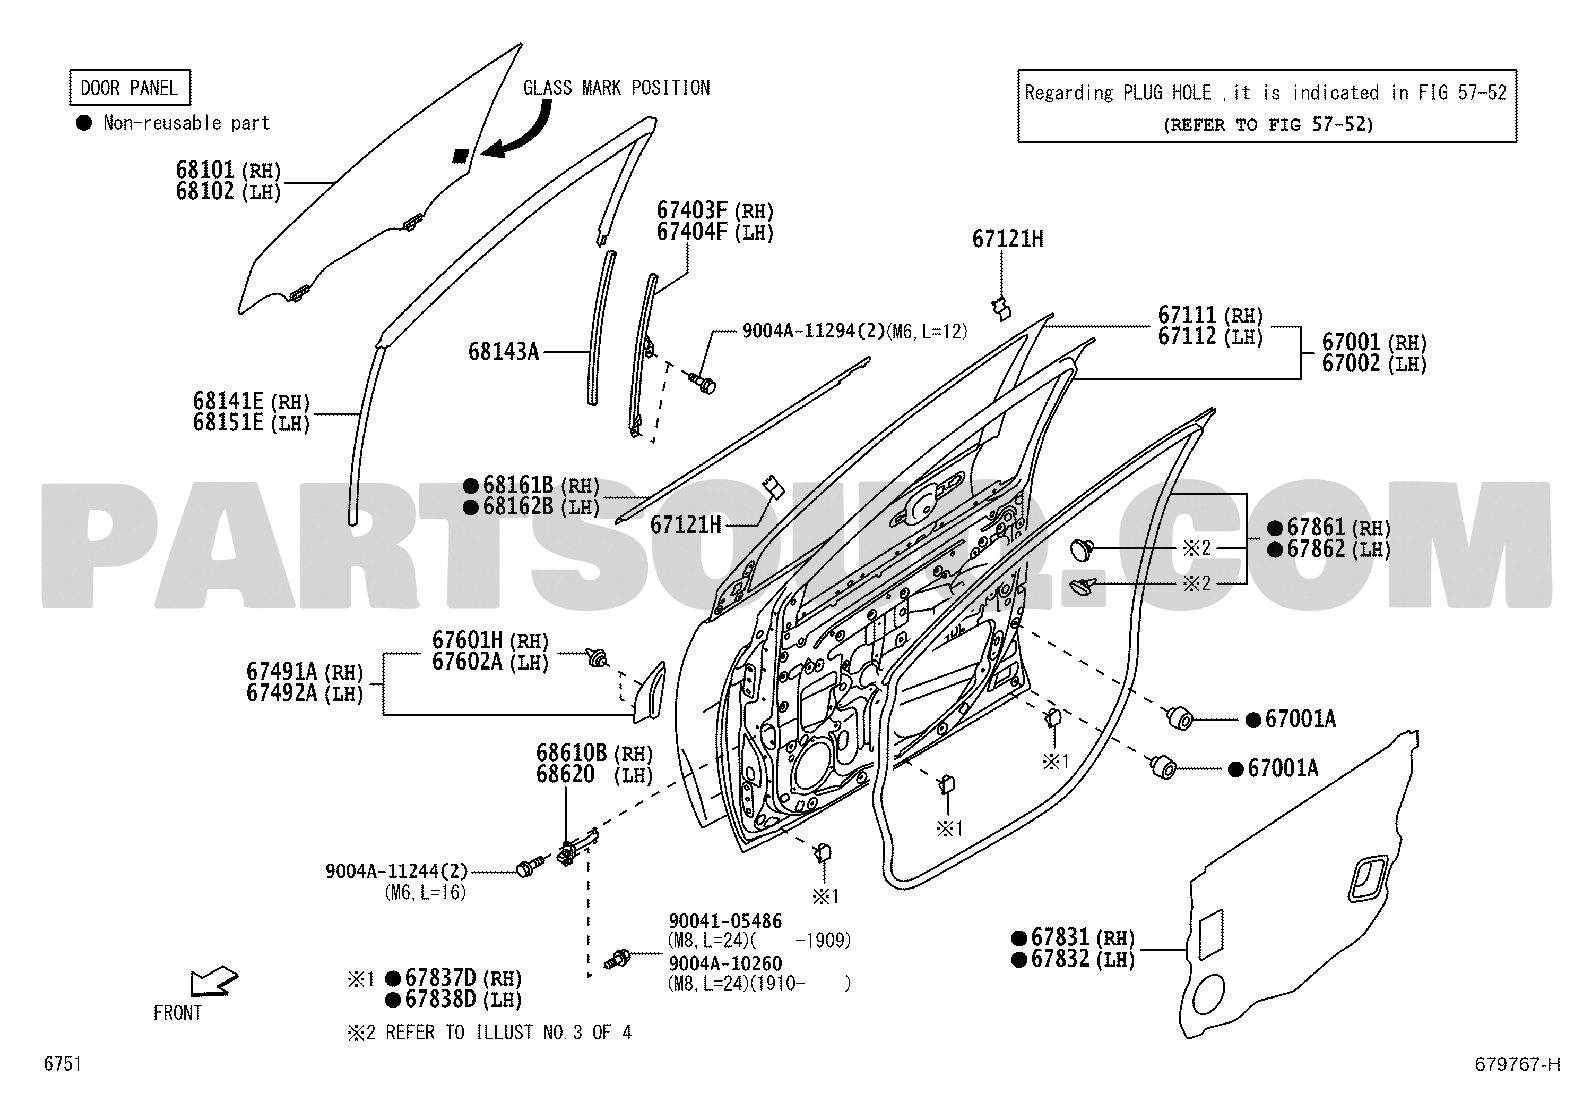 Body/Interior, Toyota RUSH F800LE-GMMFP F800